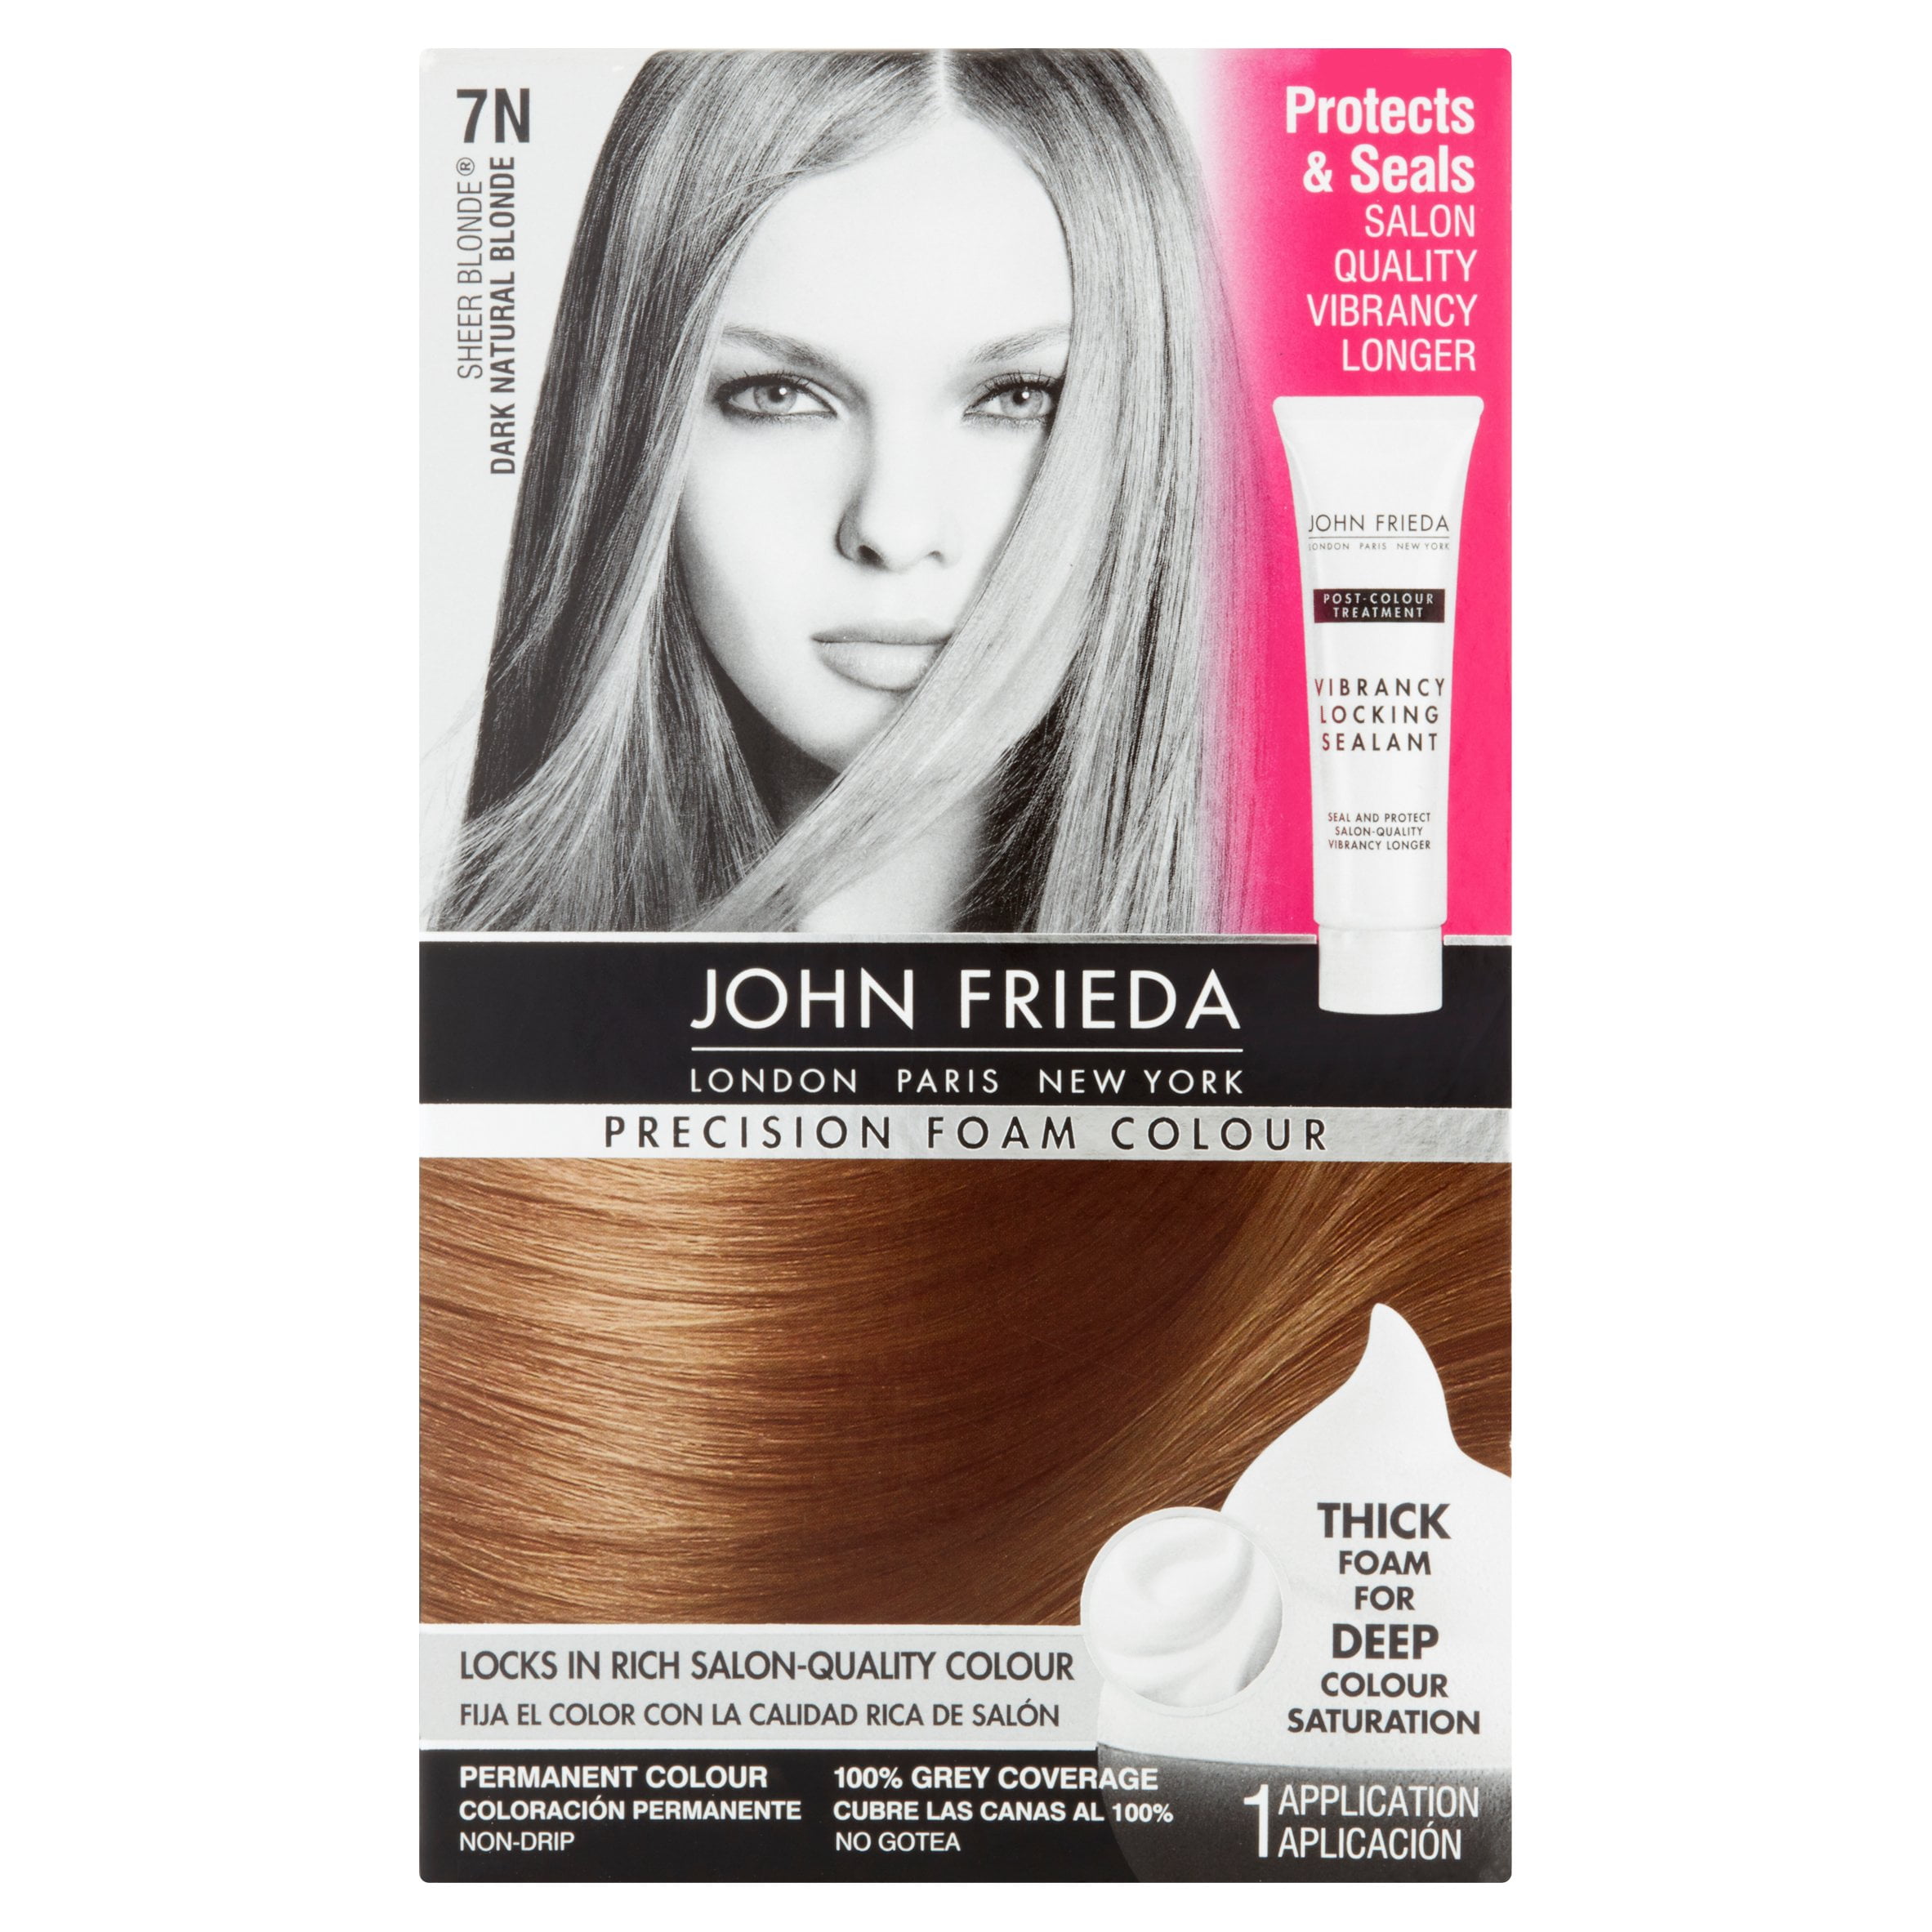 John Frieda Sheer Blonde 7N Dark Natural Blonde Precision Foam